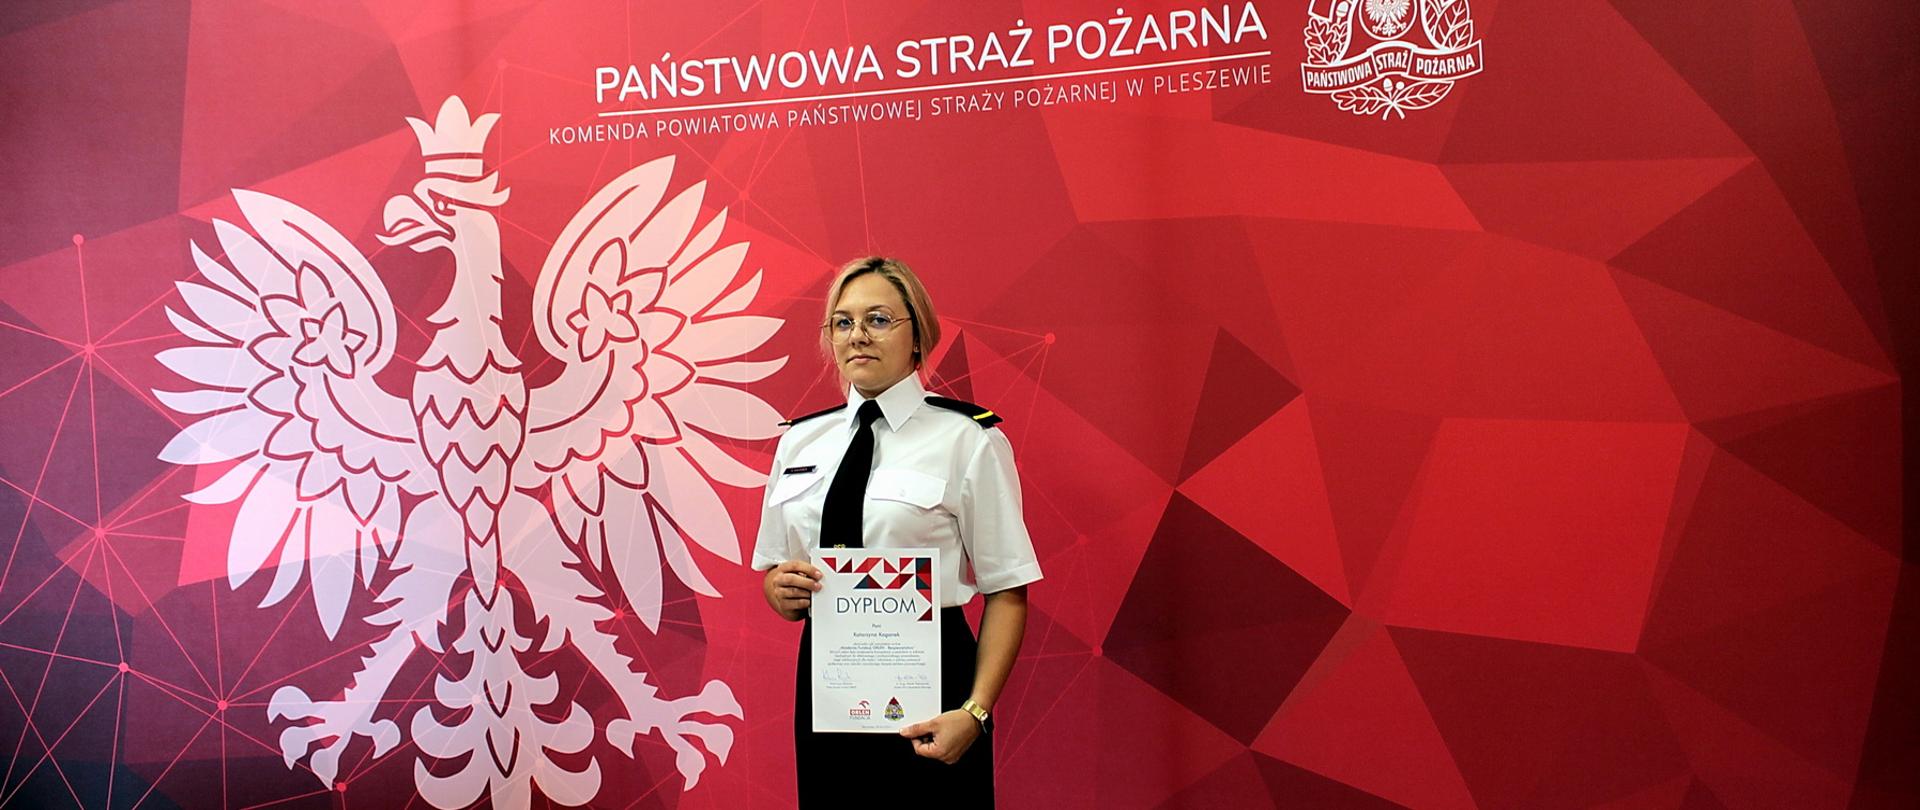 Kobieta w mundurze wyjściwoym PSP stoi przed banerem straży pożarnej, na którym widoczny jest orzeł państwowy oraz logo PSP i napis Państwowa Straż Pożarna na czerwonym tle. Kobieta trzyma w ręku dyplom